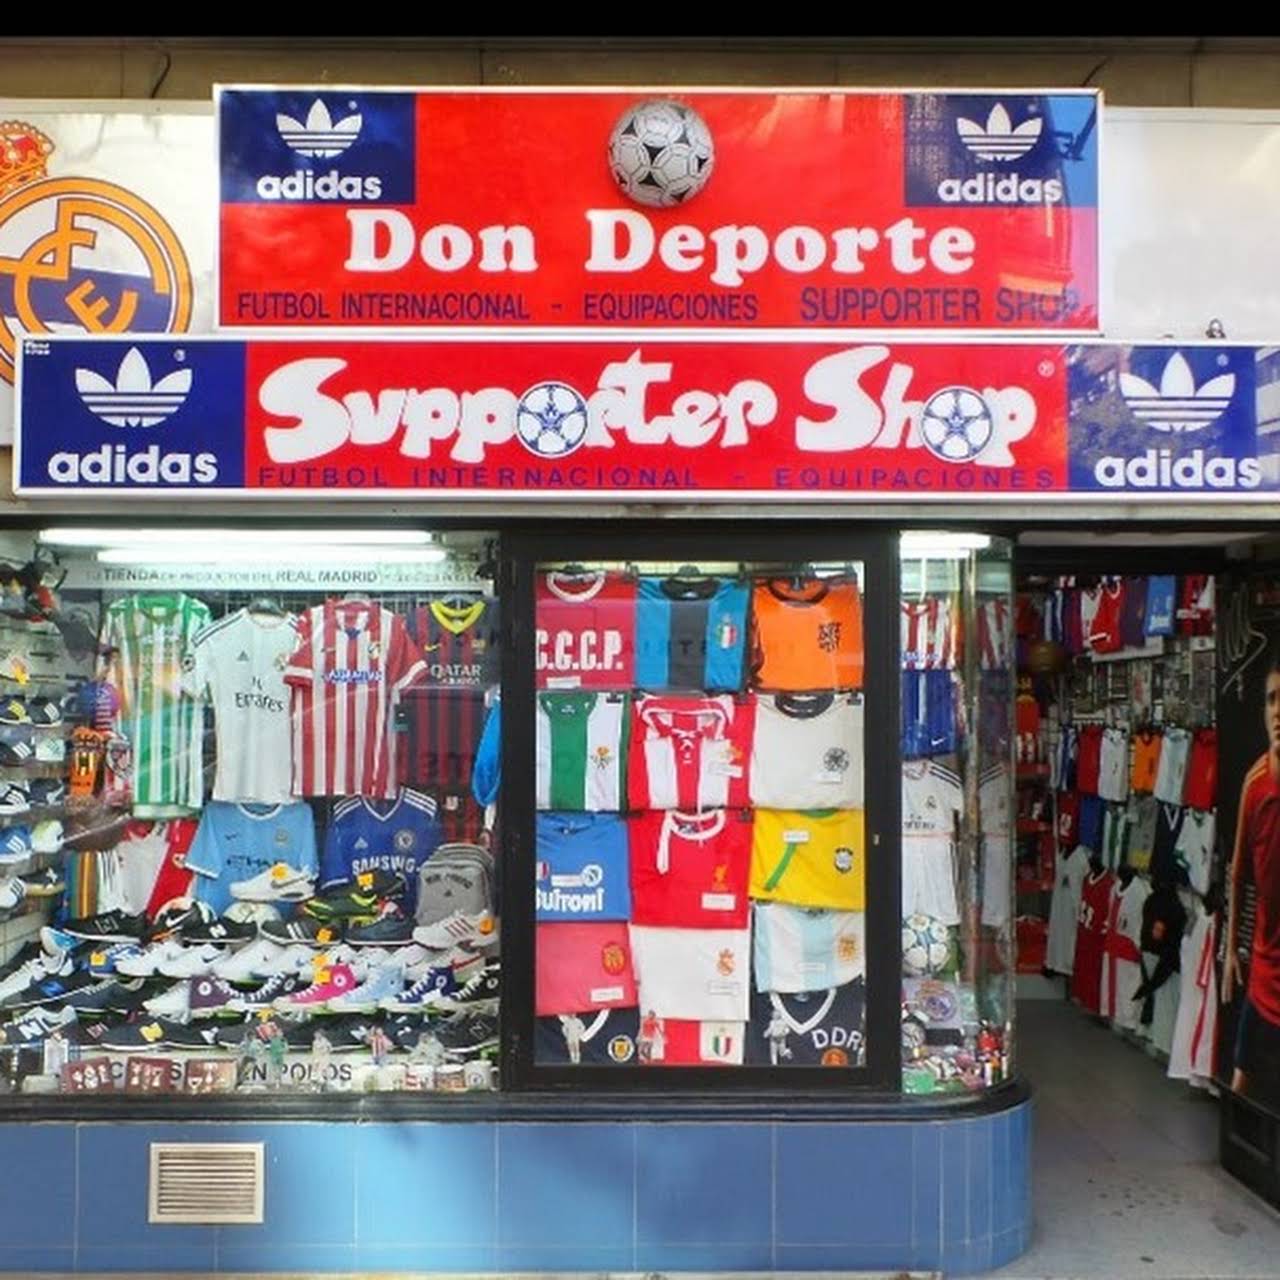 Don Deporte "La Tienda de Goya de Toda - Tienda De Deportes en Madrid